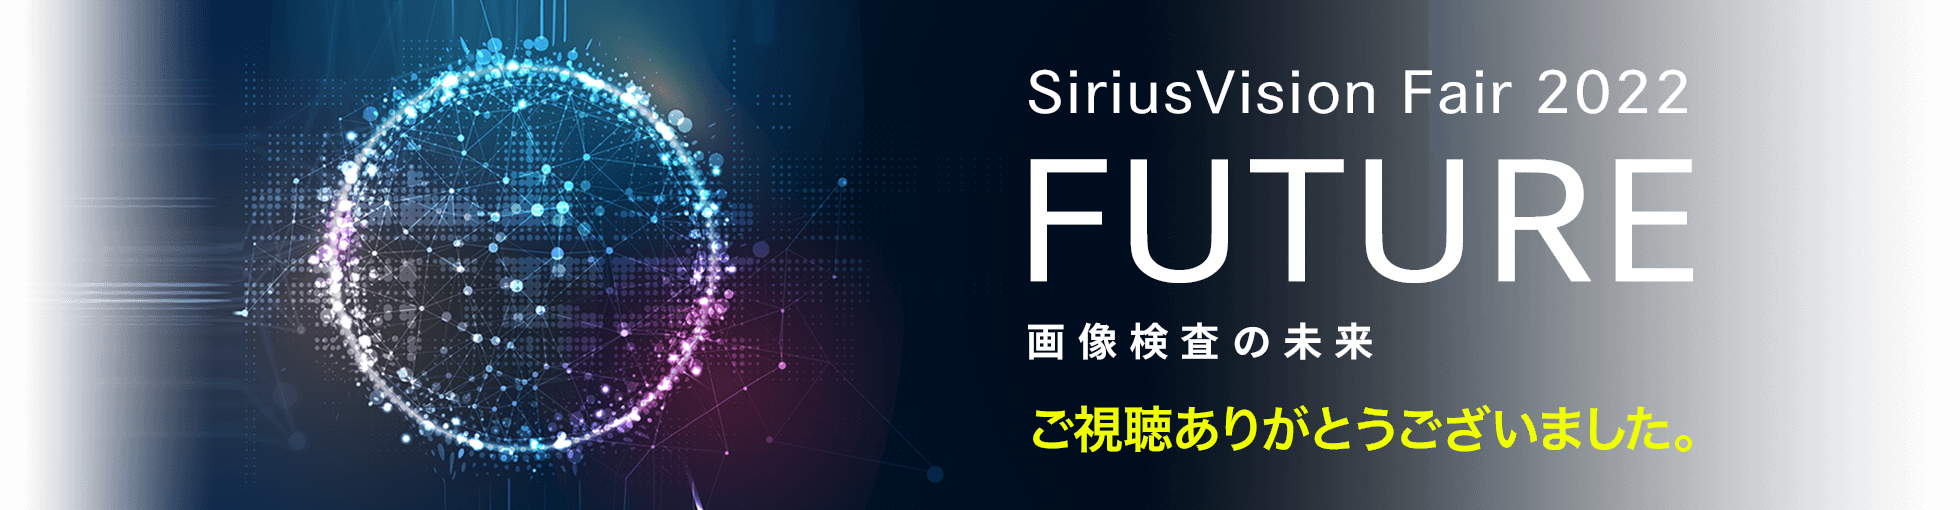 SiriusVision Fair 2022